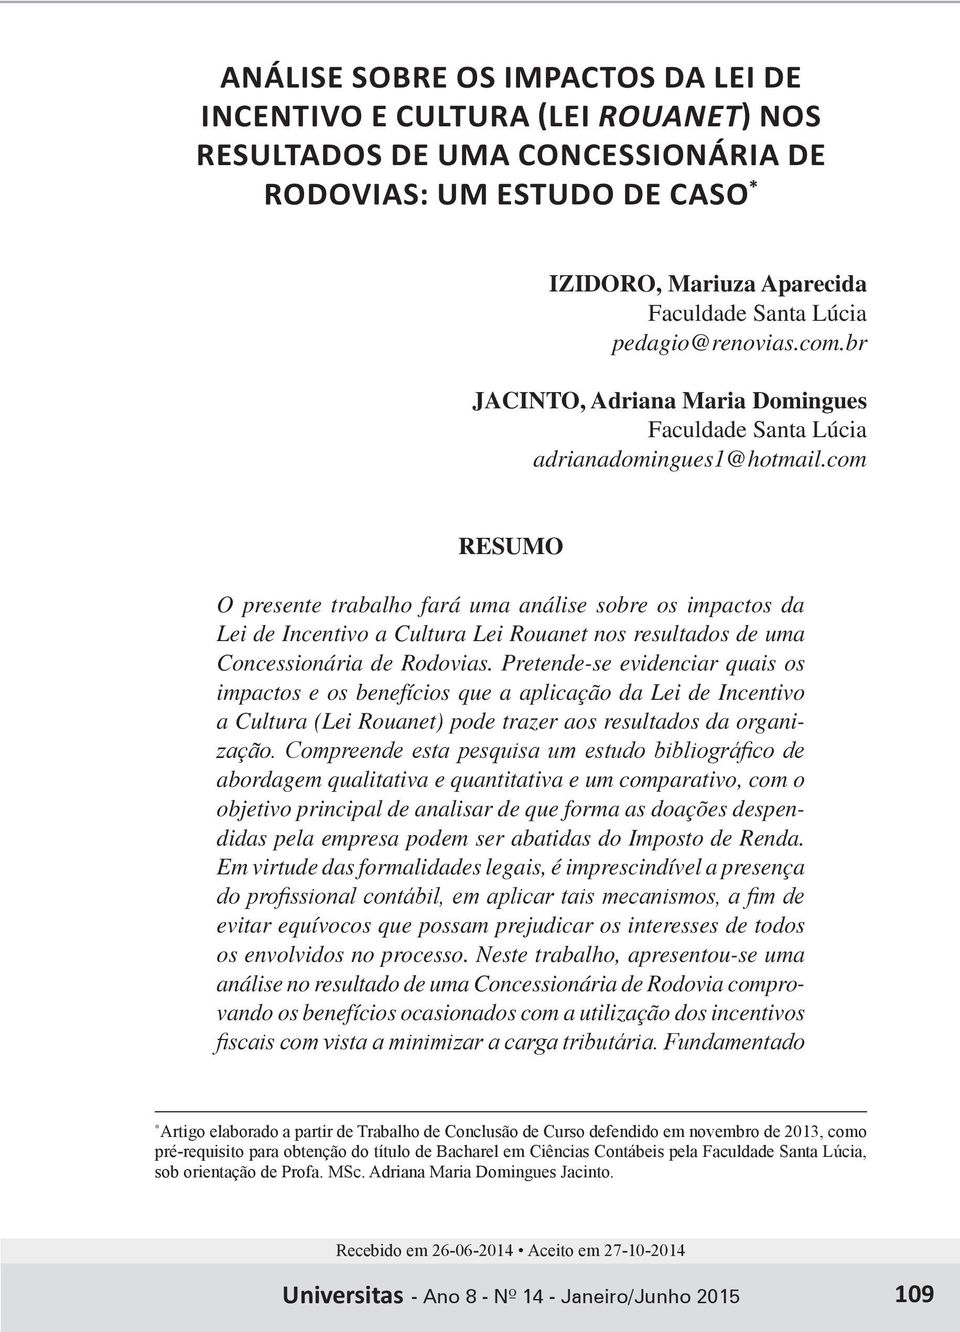 com RESUMO O presente trabalho fará uma análise sobre os impactos da Lei de Incentivo a Cultura Lei Rouanet nos resultados de uma Concessionária de Rodovias.